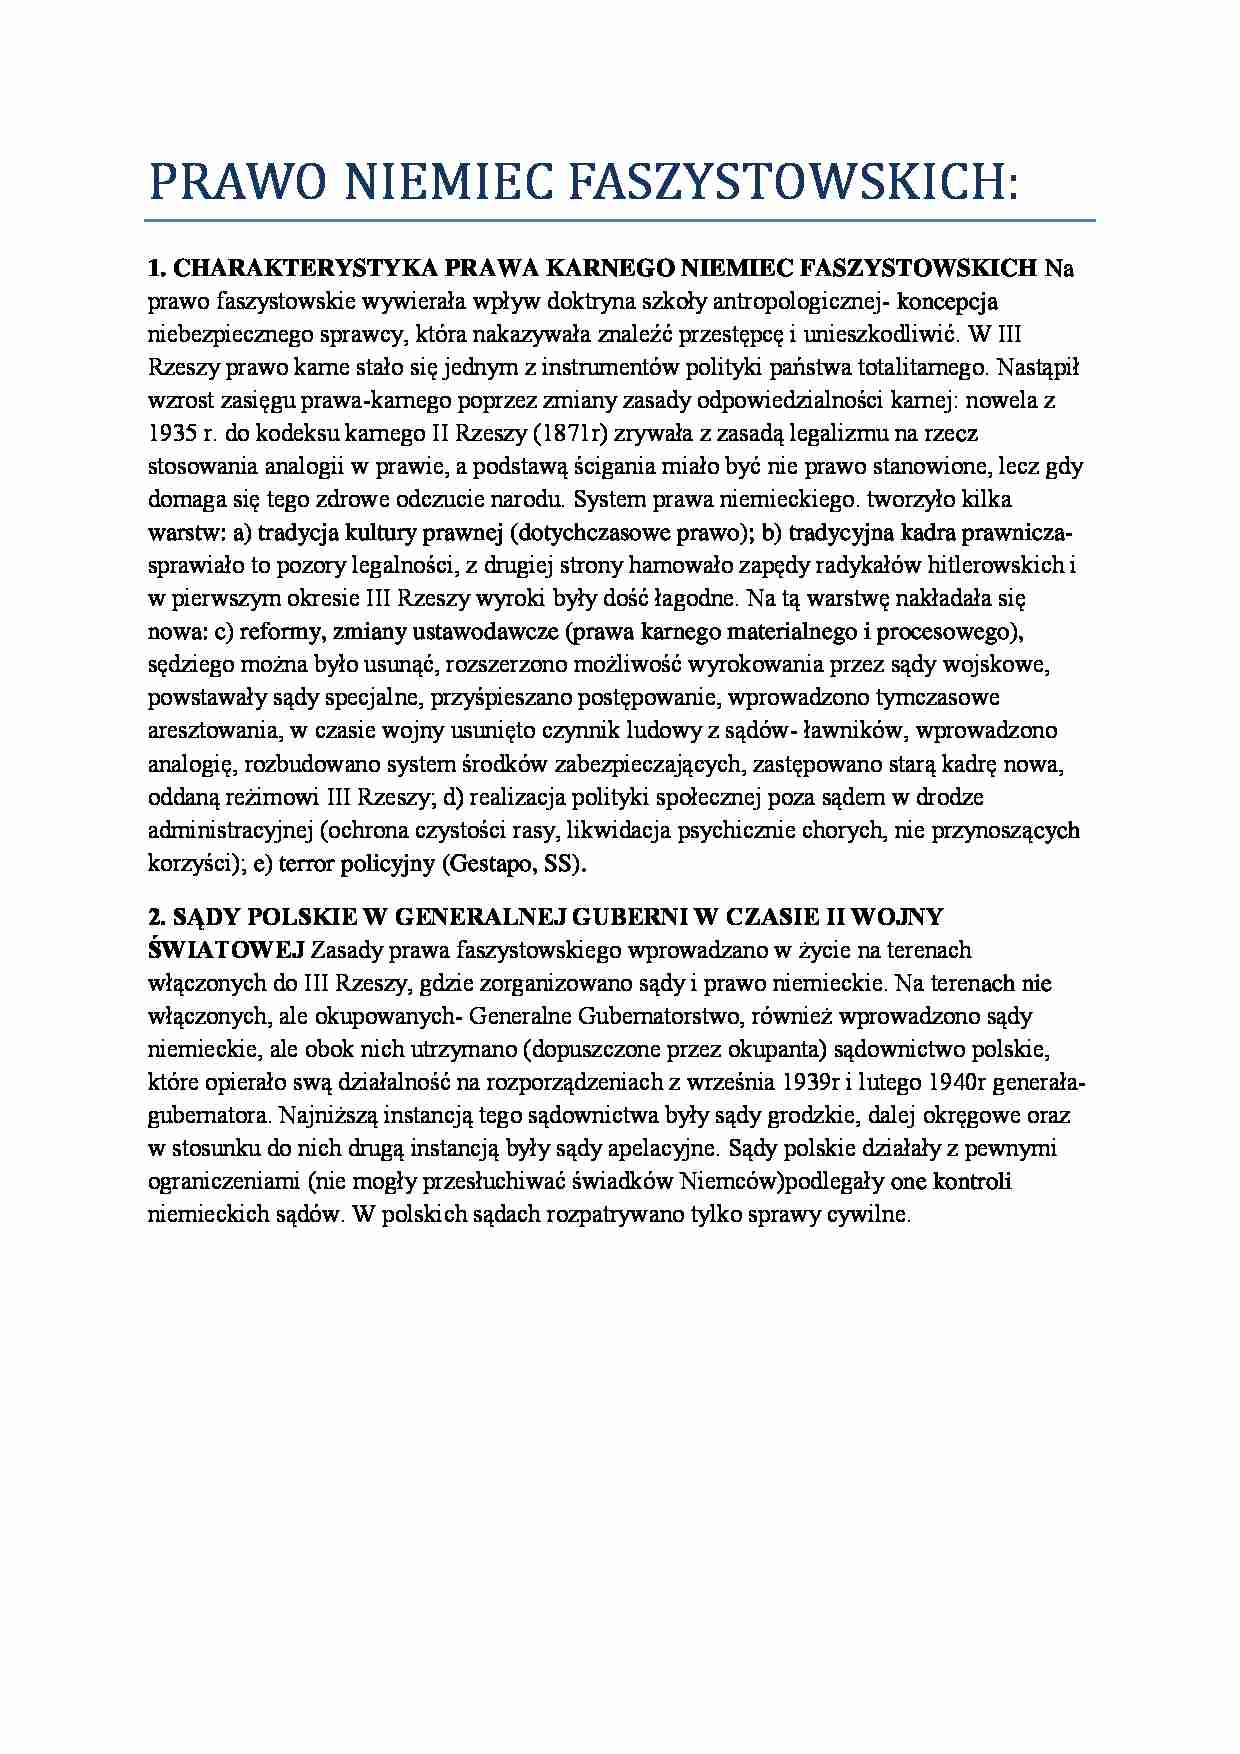 Historia państwa i prawa polskiego - PRAWO NIEMIEC FASZYSTOWSKICH - strona 1